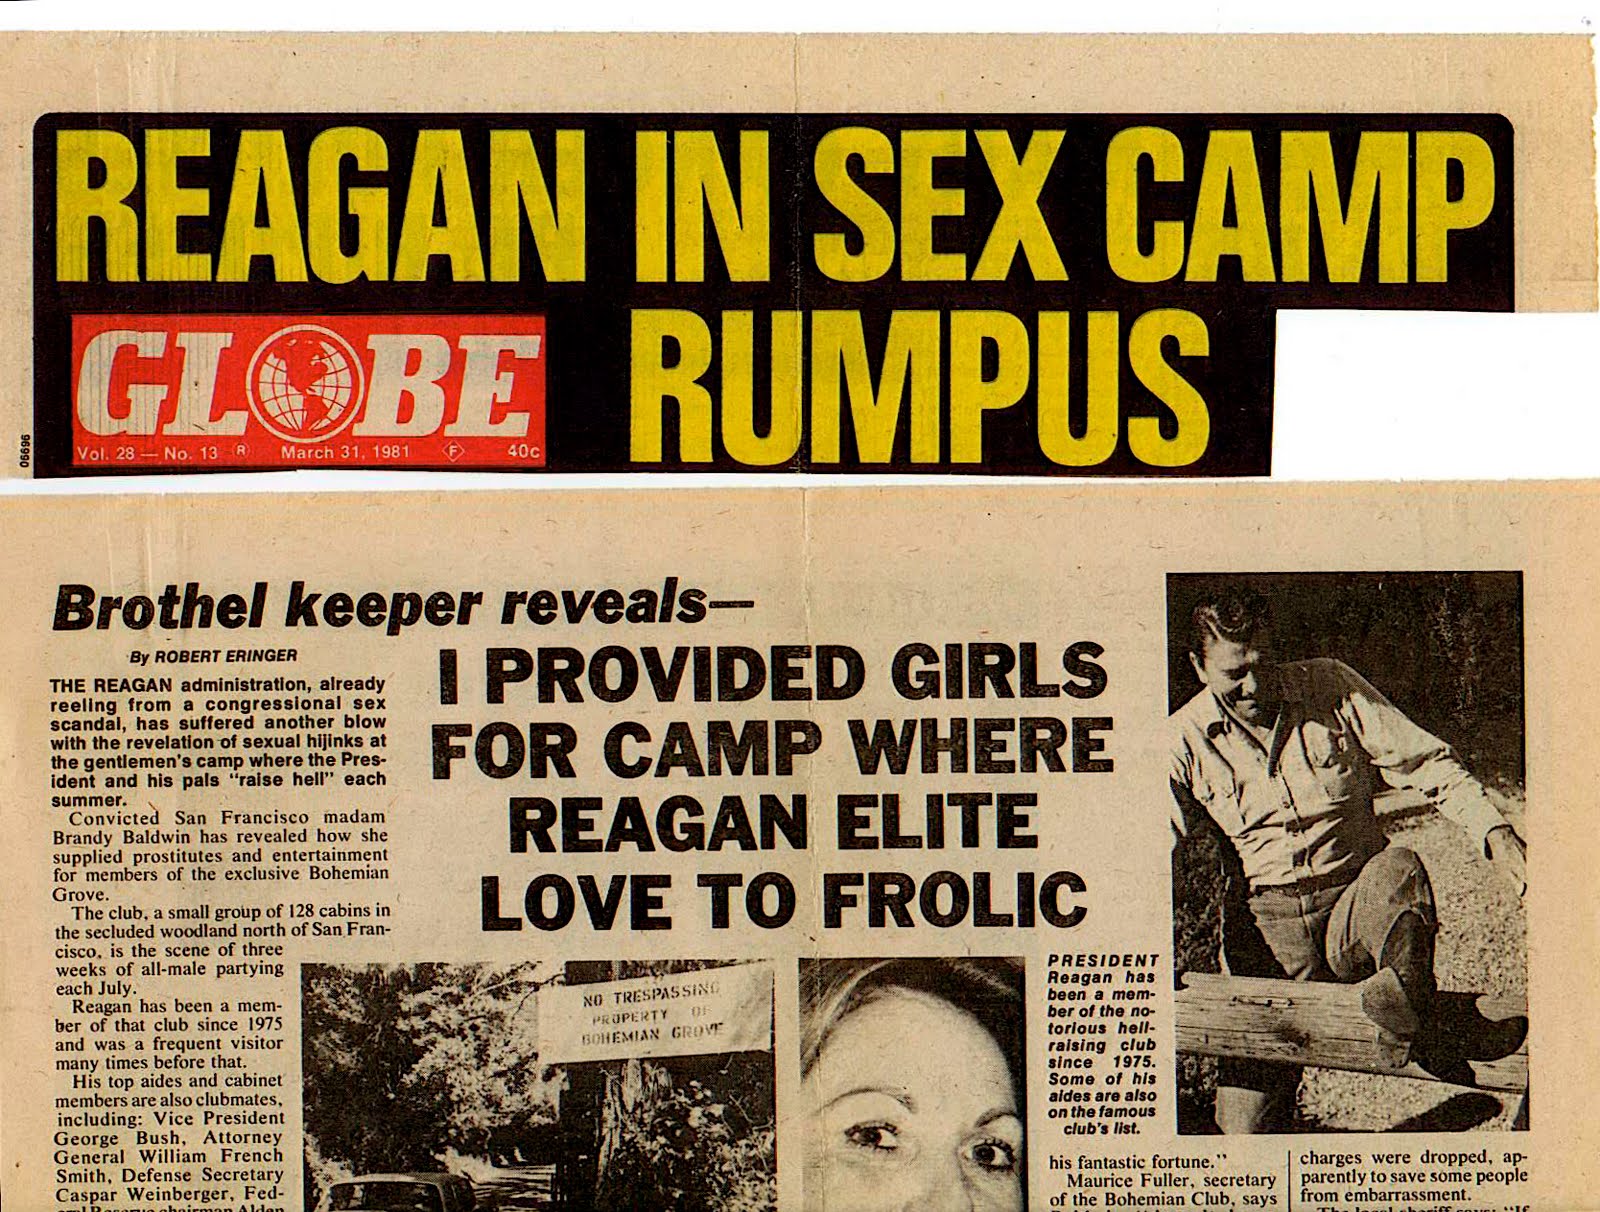 Reagan in sex camp rumpus